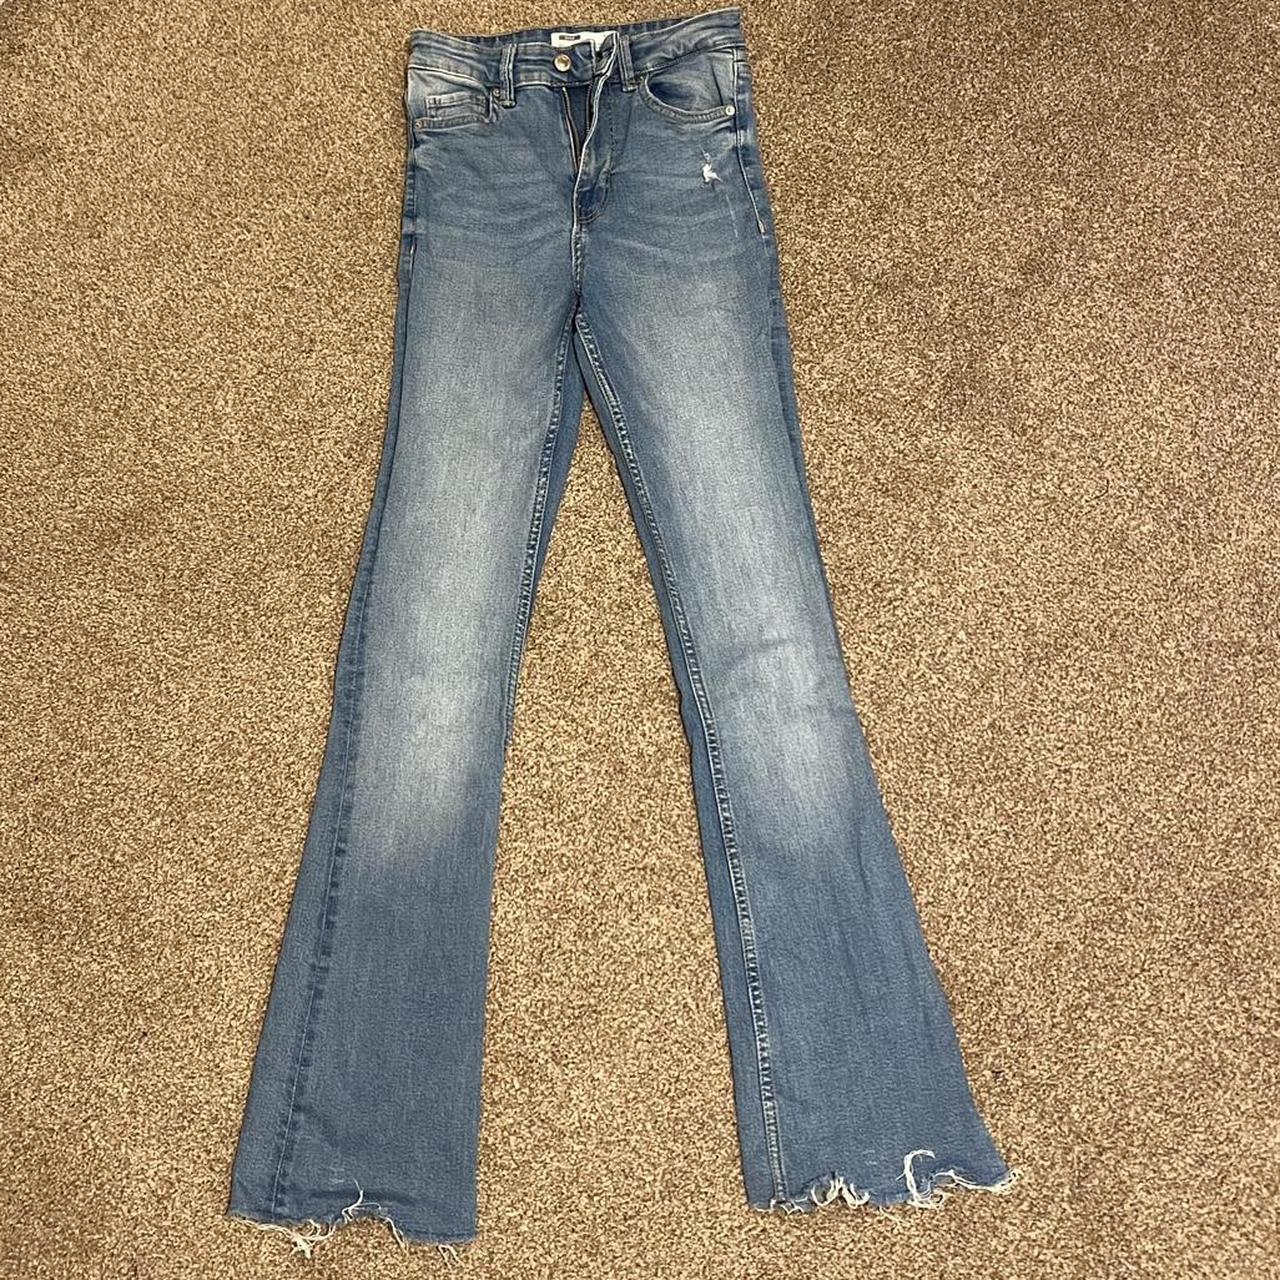 blue denim washed flared jeans bershka size 4 5’4... - Depop